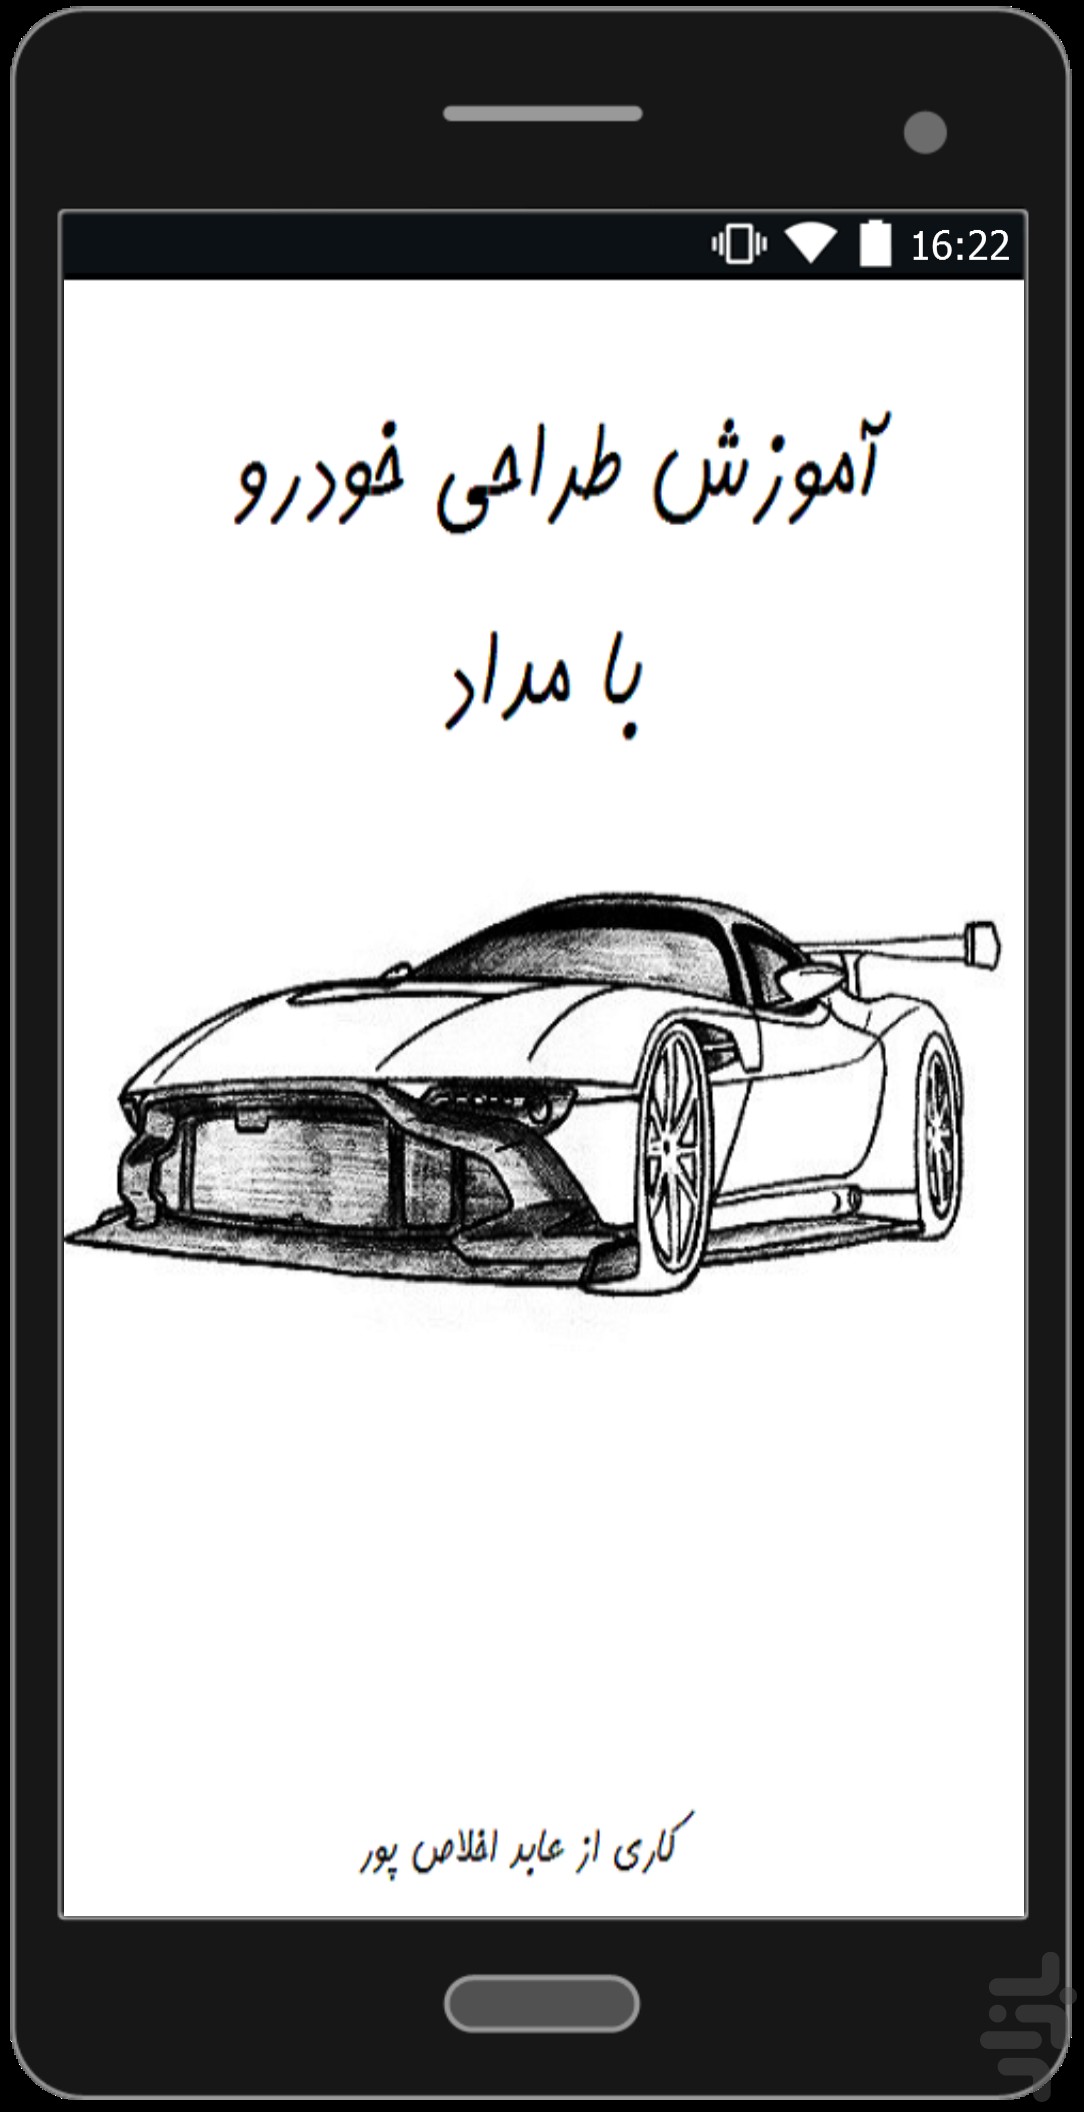 برنامه نقاشی ماشین های ایرانی